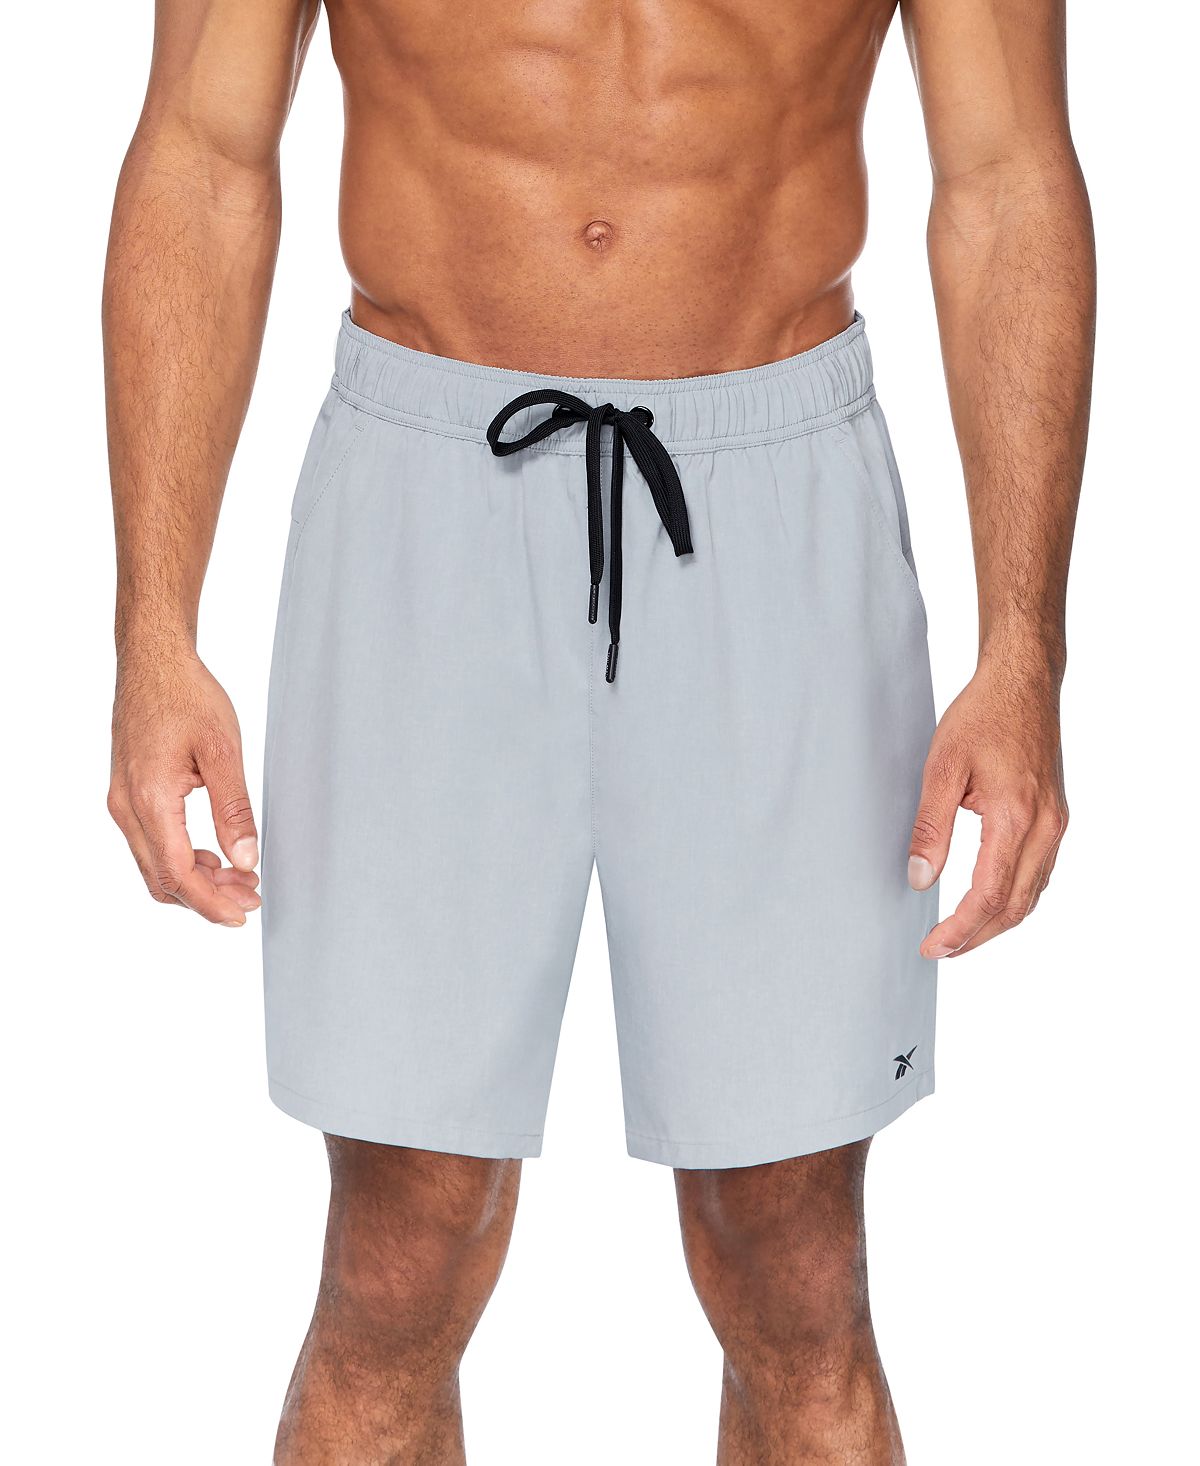 Мужские шорты для волейбола для спортсменов шириной 7 дюймов Reebok цена и фото